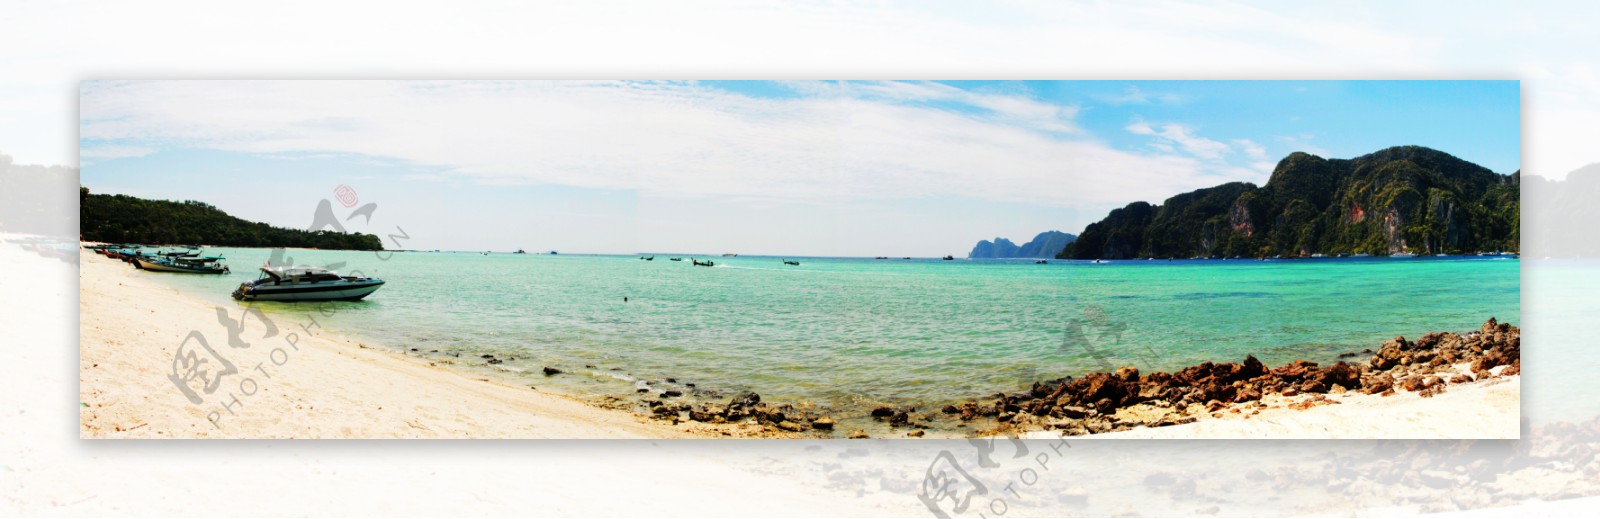 泰国普吉pp岛海滩图片